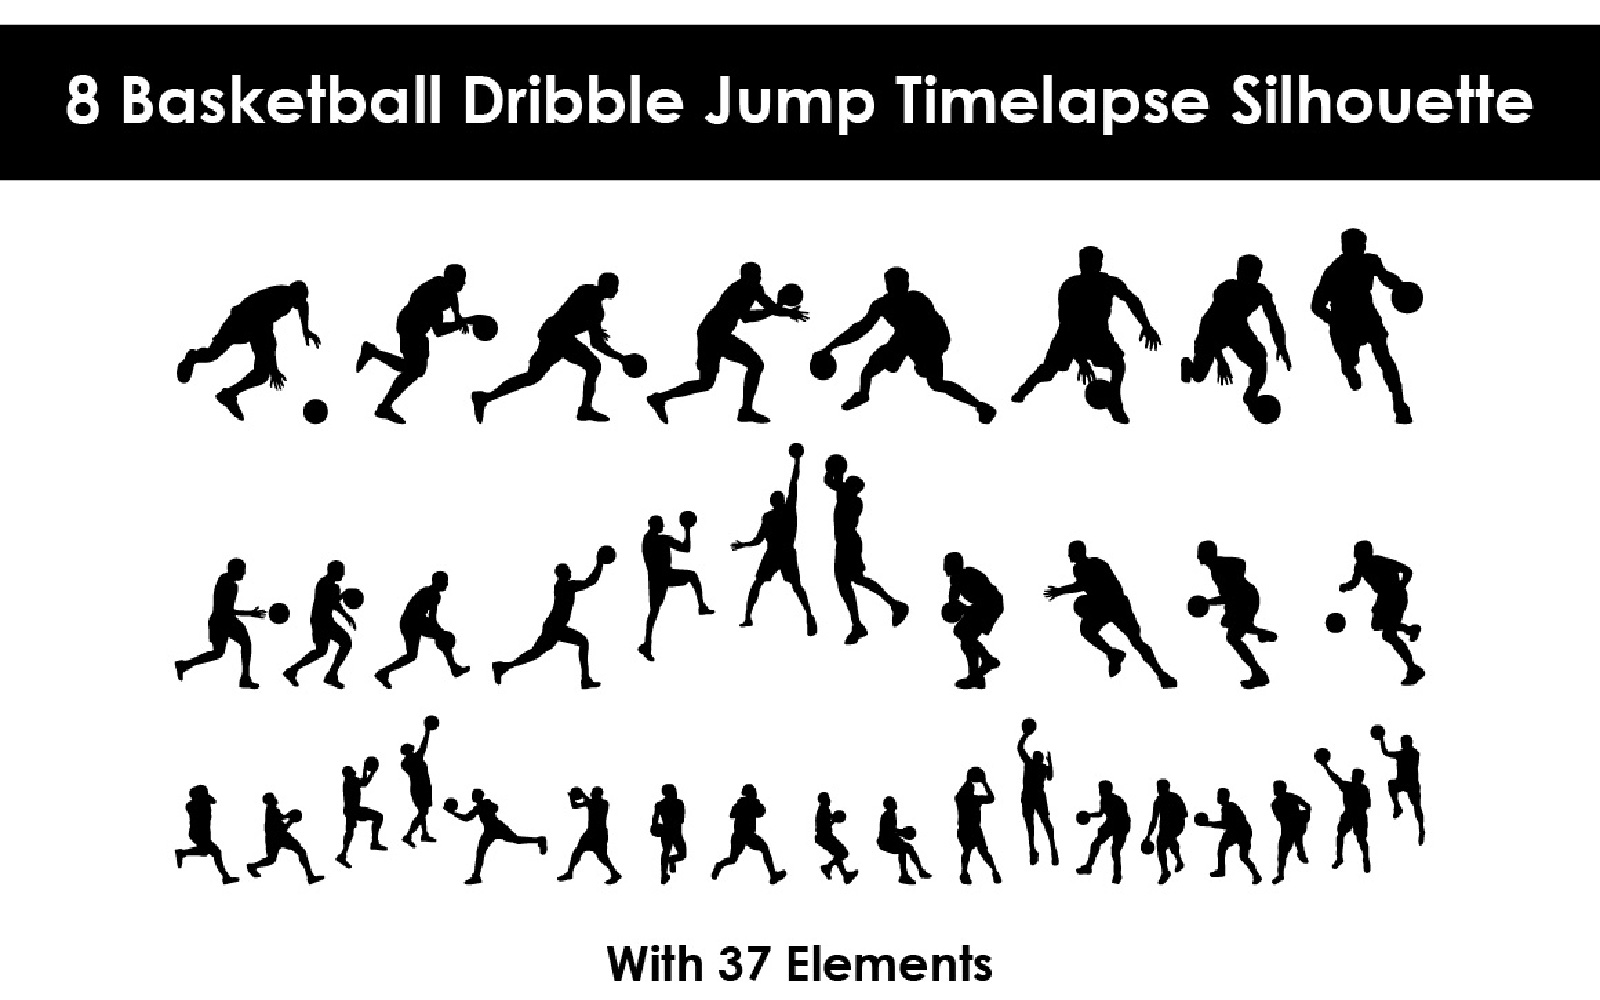 8 Basketball Dribble Jump Timelapse Silhouette